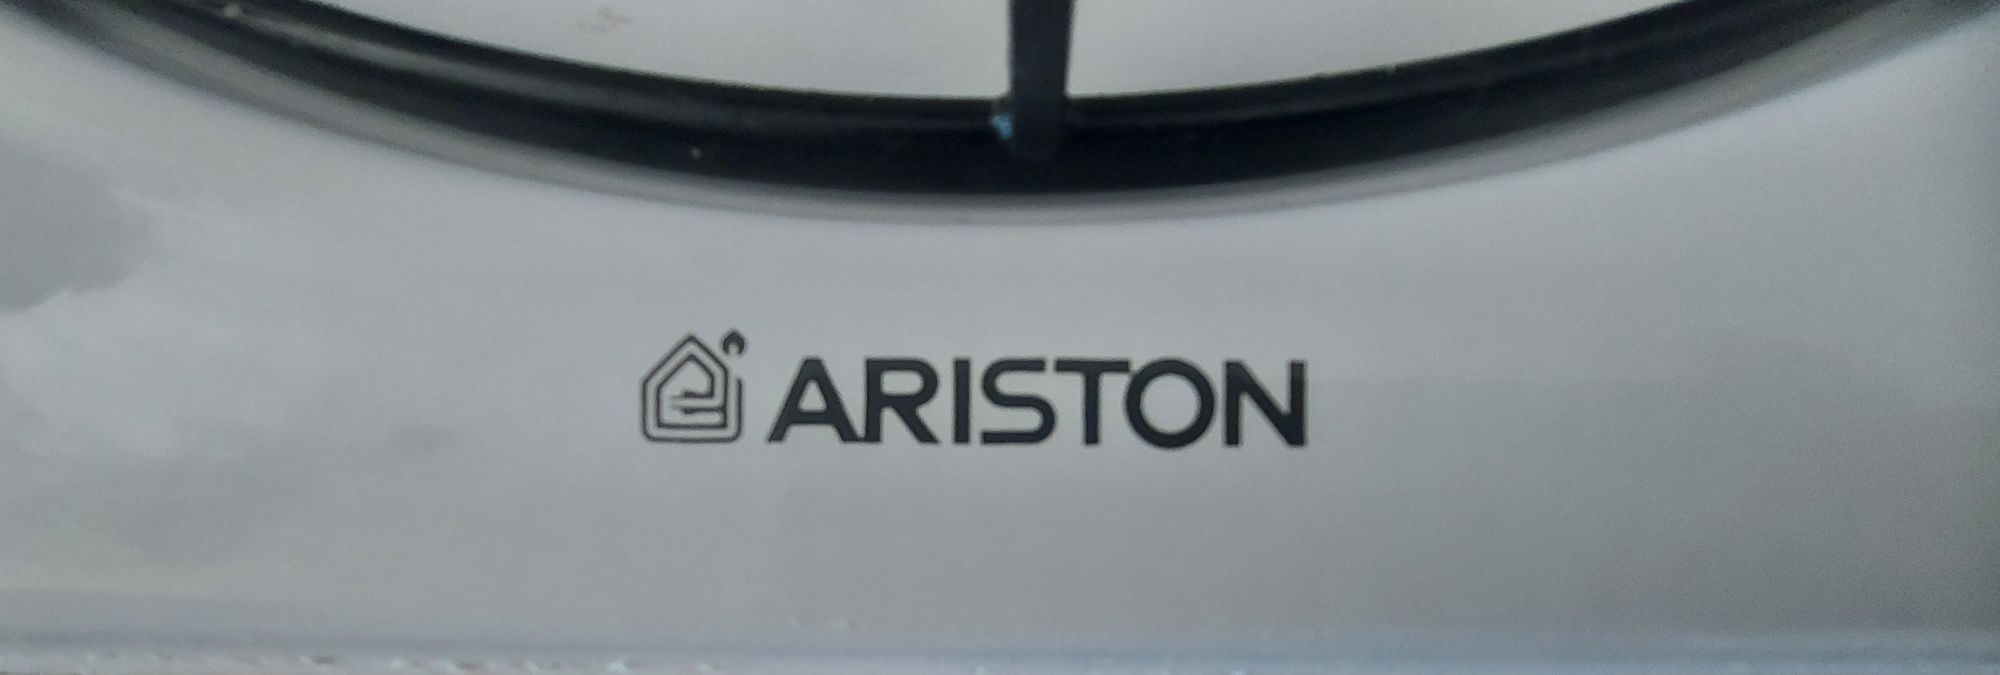 Placa Ariston de encastre - Oferta Tampo em vidro